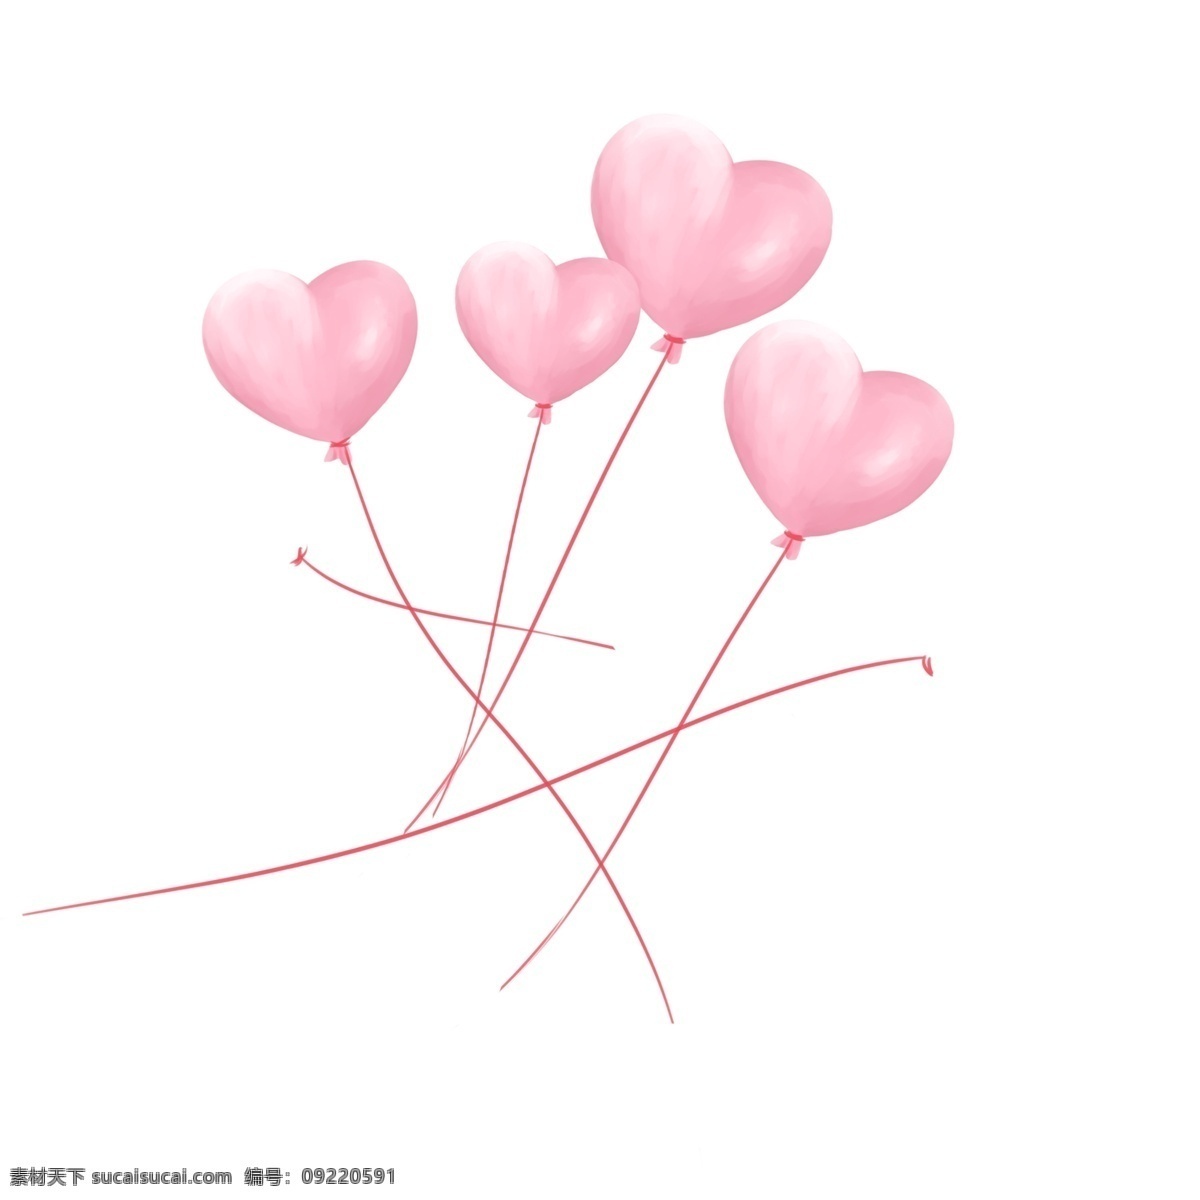 清新 粉白色 气球 装饰 元素 装饰元素 手绘 粉色 白色 浪漫 少女心 简约